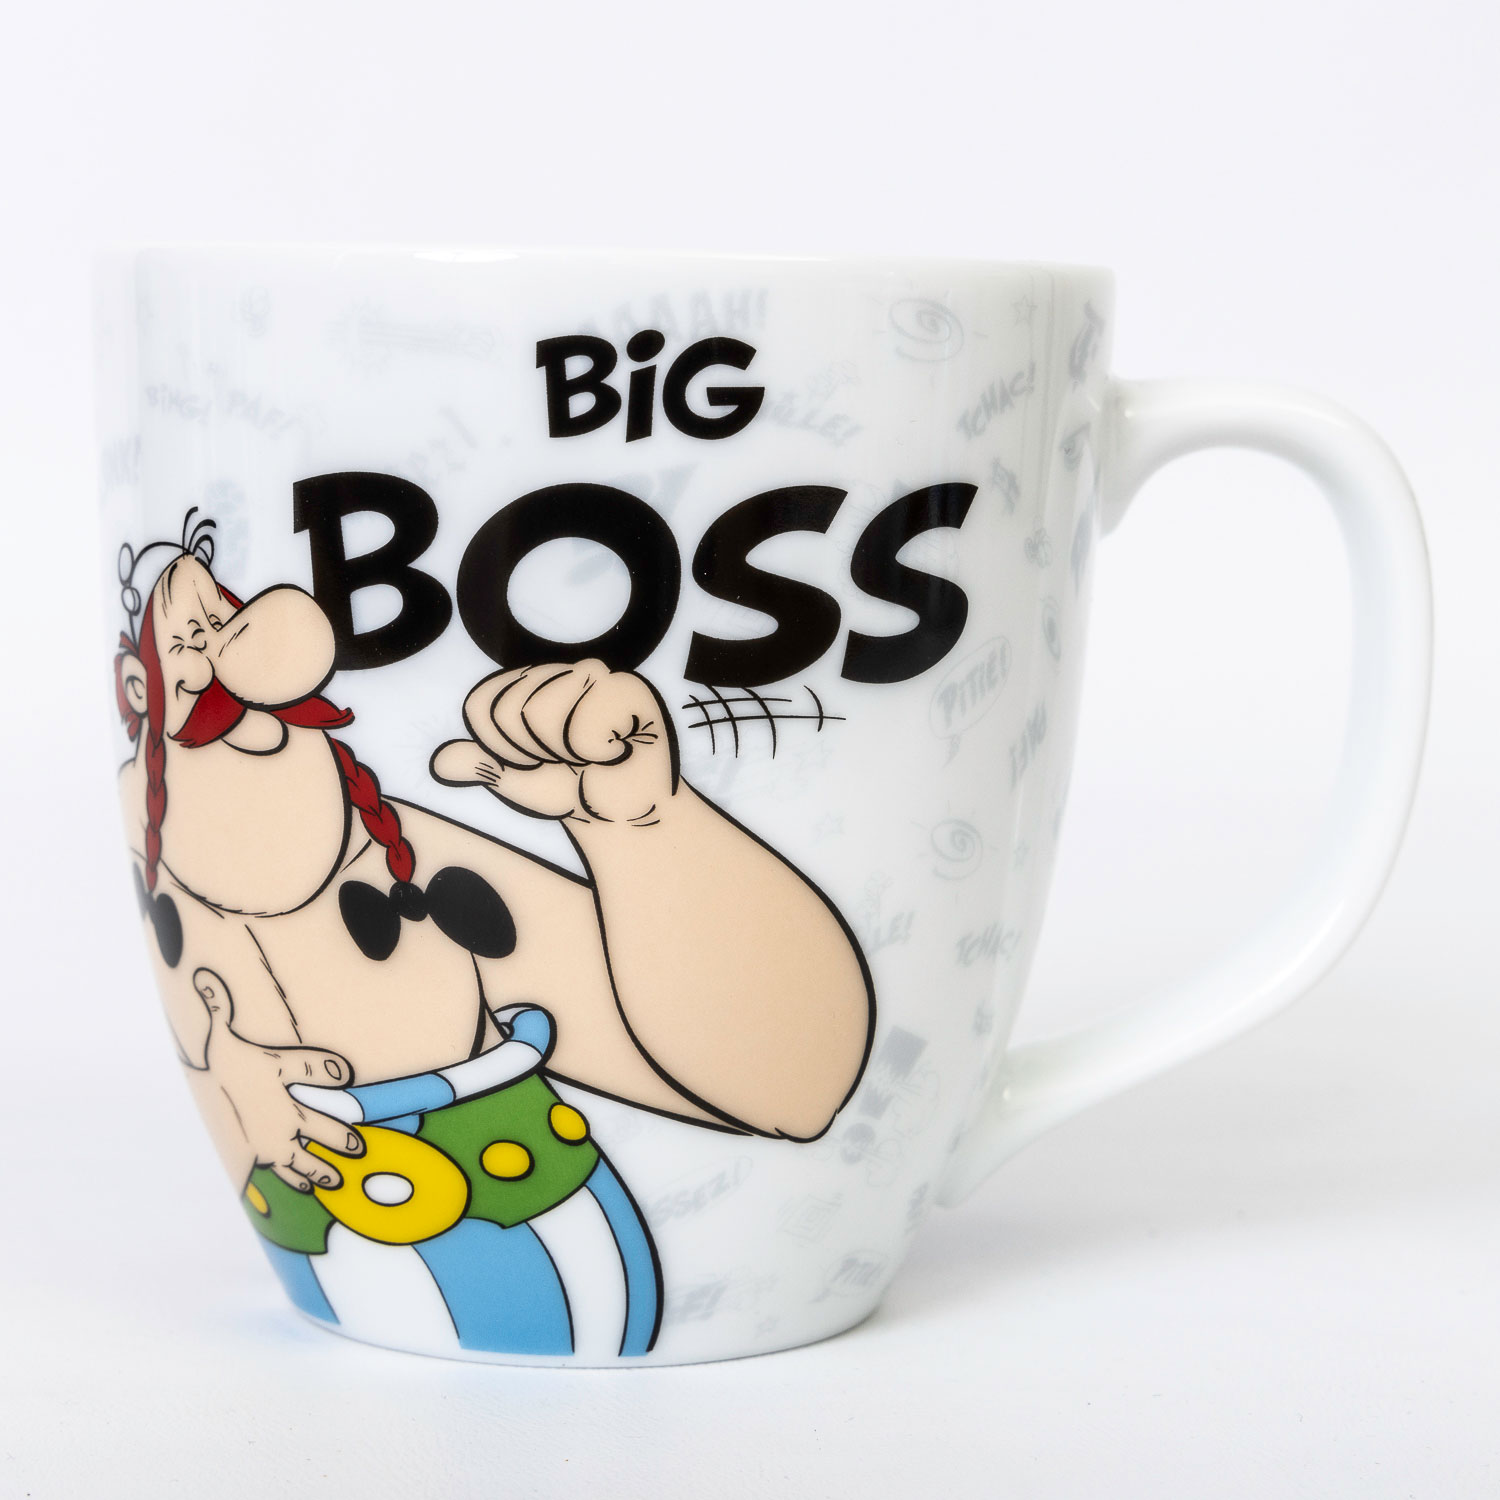 Uderzo mug : Asterix and Obelix : Big boss (detail 1)